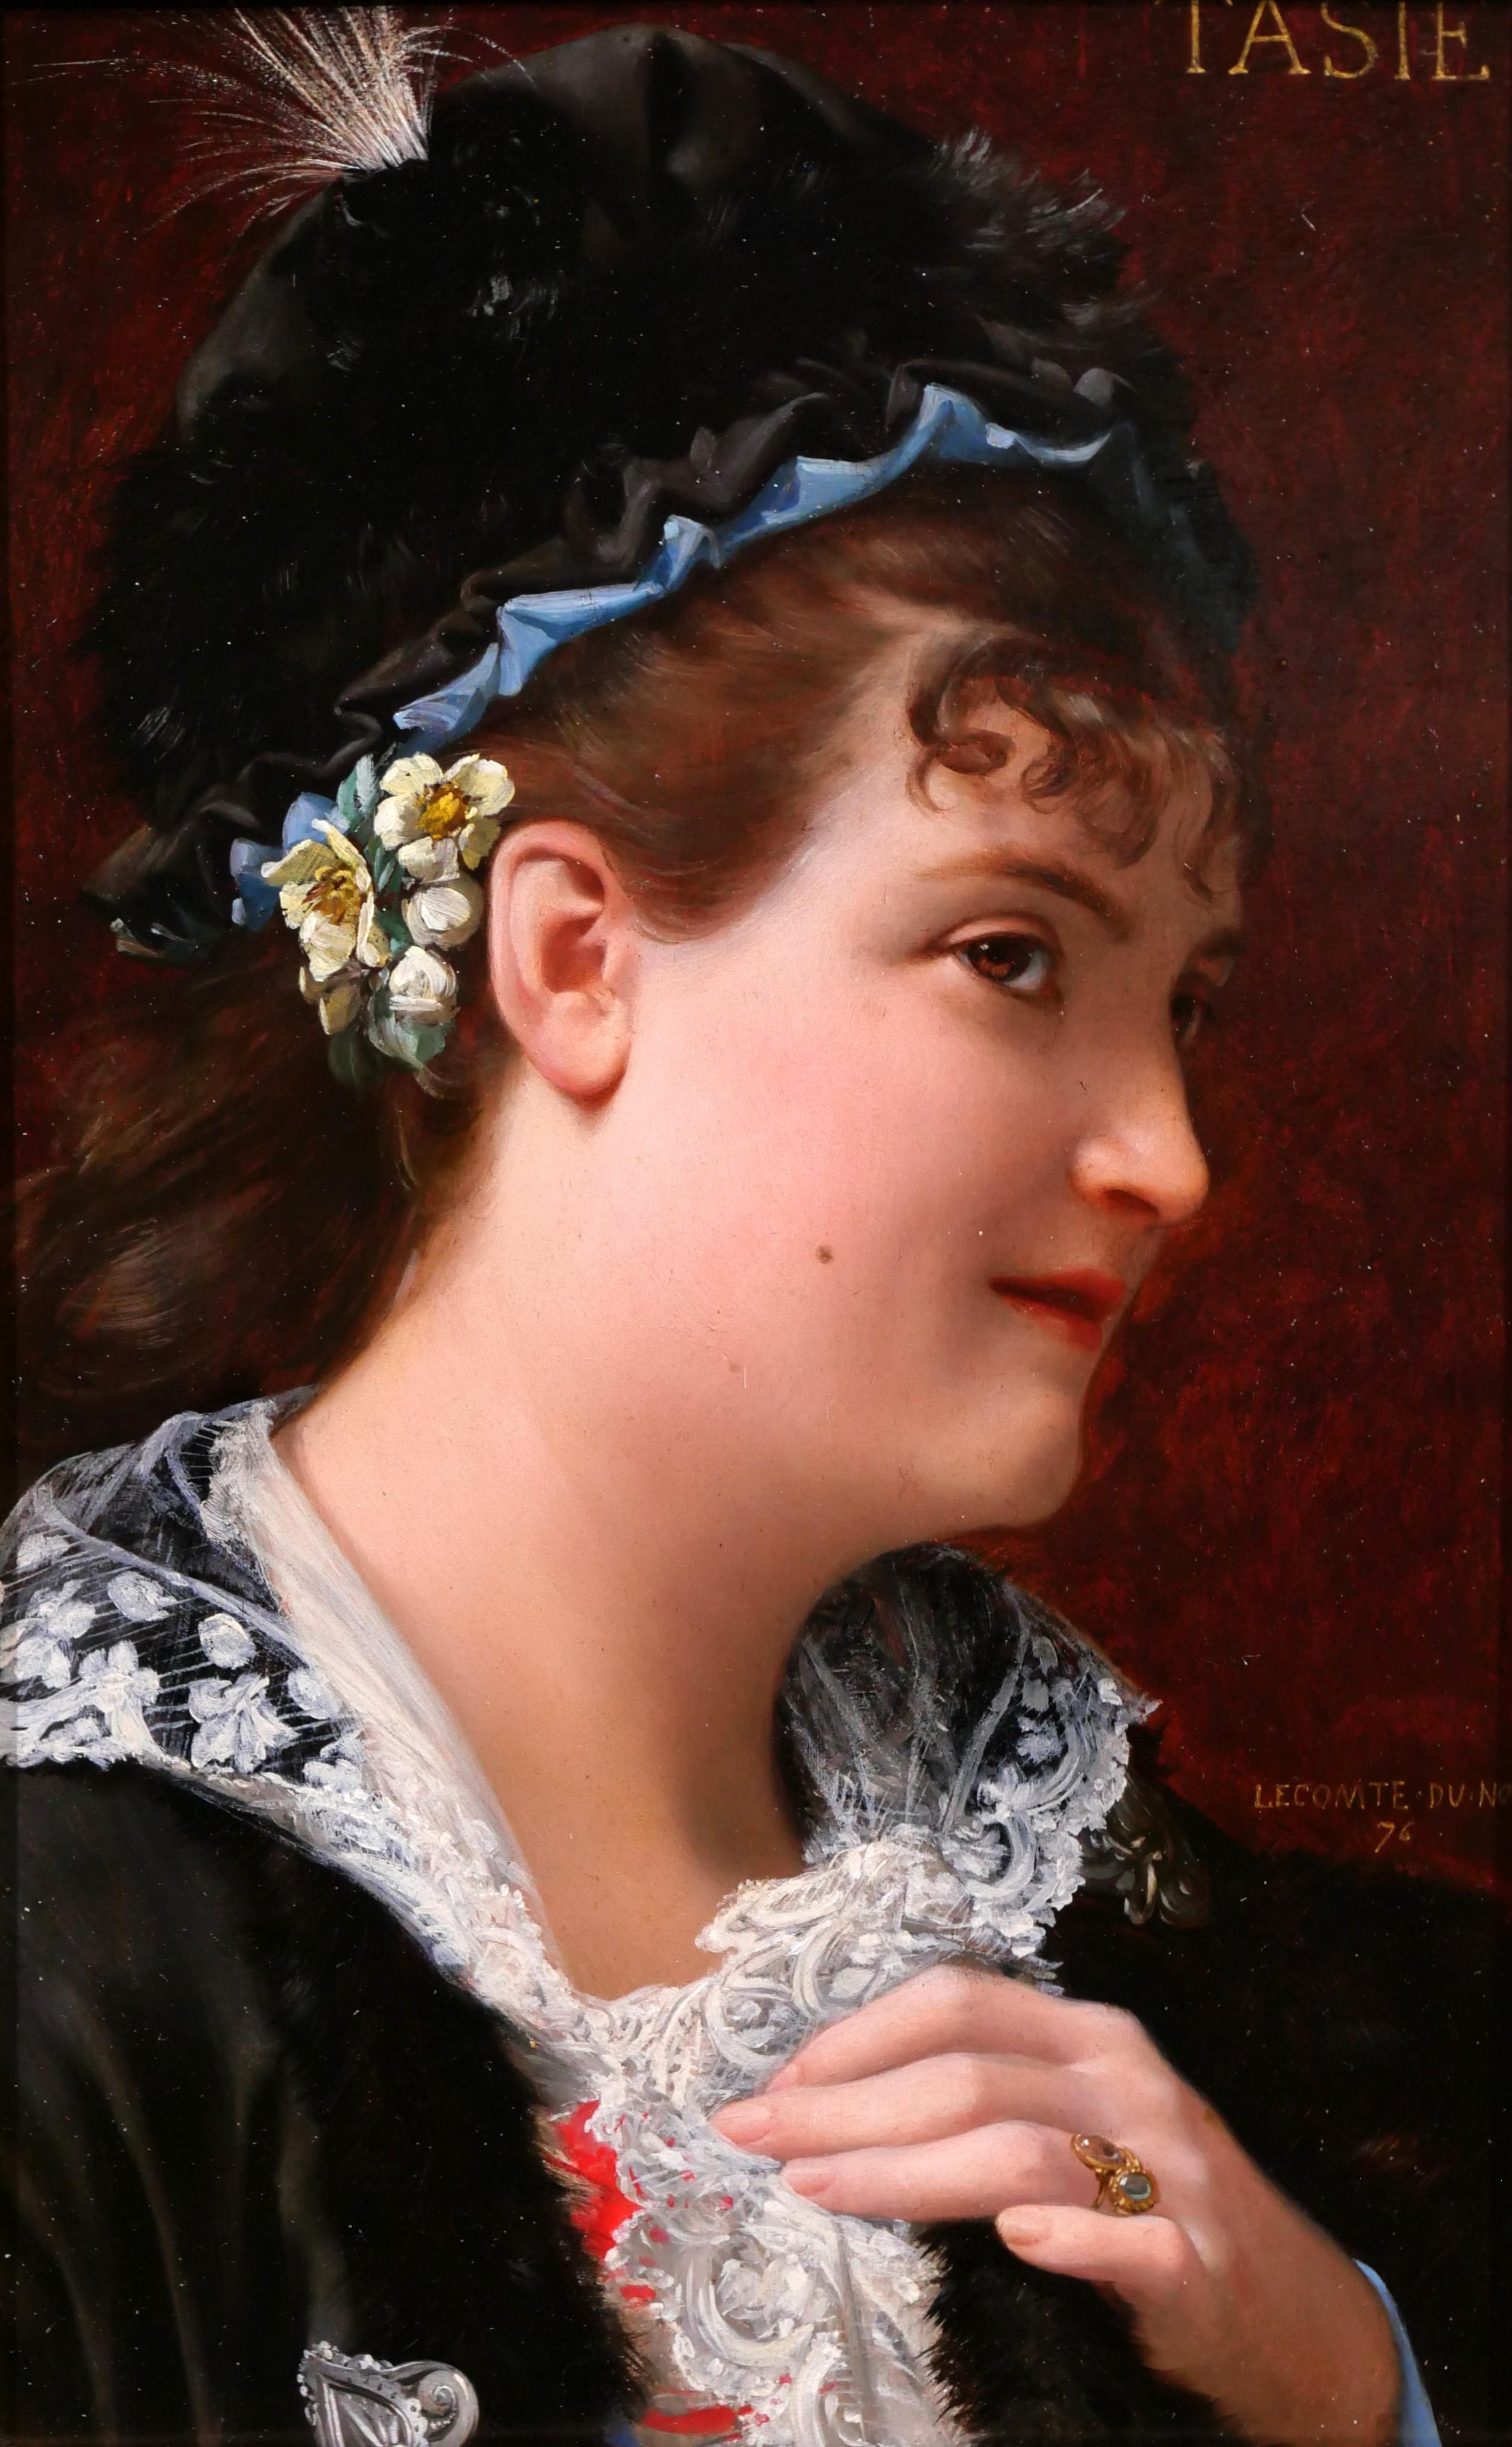 Jean Jules Antoine LECOMTE DU NOÜY Portrait Painting - Portrait of a woman, Tasie